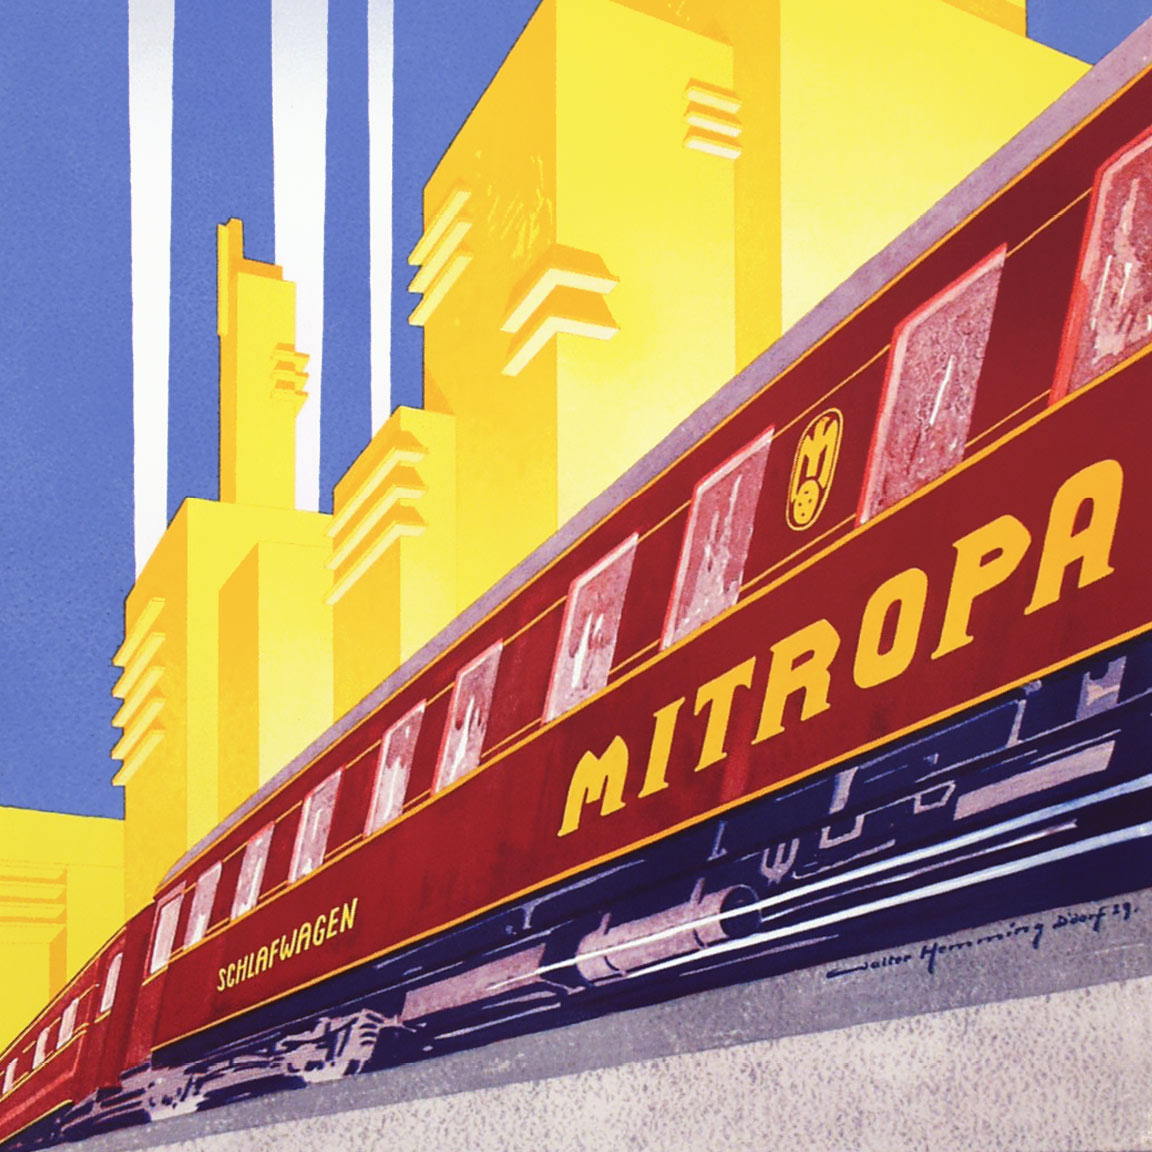 Affiche Mitropa slaaprijtuigen, 1929 | Walter Hemming (collectie Arjan den Boer)